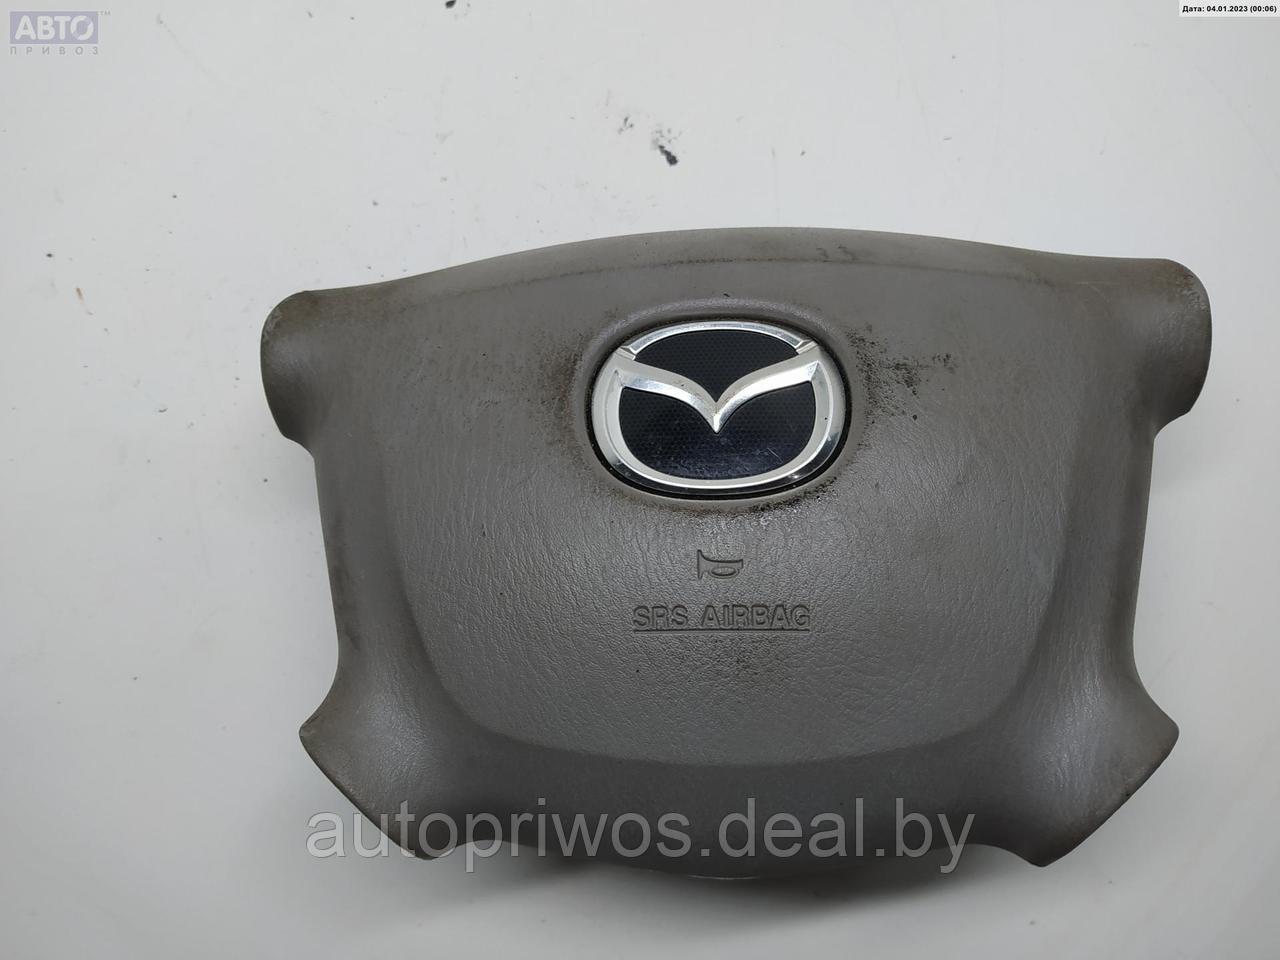 Подушка безопасности (Airbag) водителя Mazda Demio